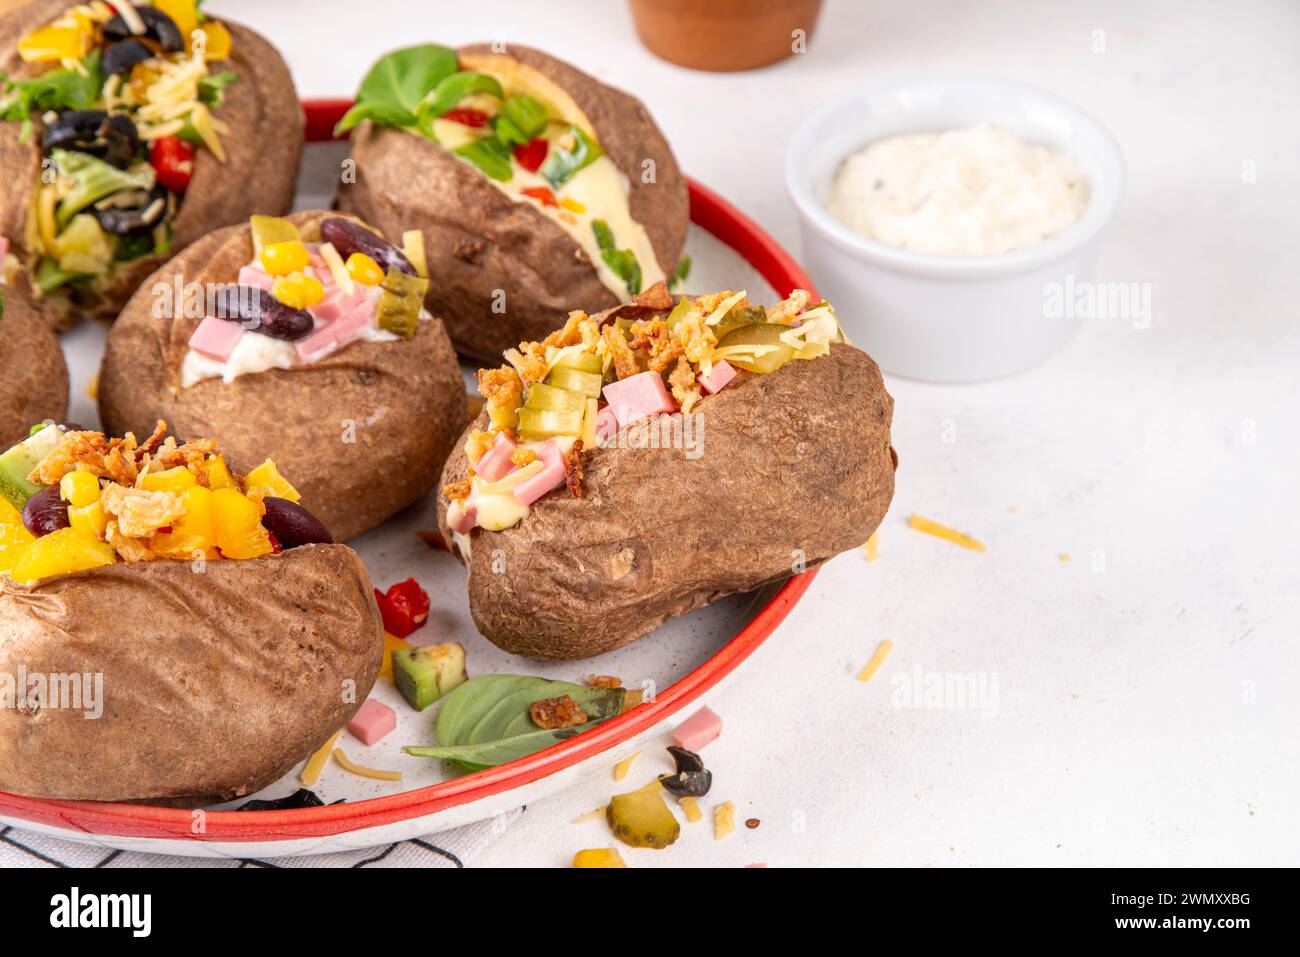 Hausgemachte Kartoffel mit verschiedenen Belägen - Fleisch, Würstchen, Gemüse, Käse, mit weißer Käsesauce, Kopierraum Stockfoto